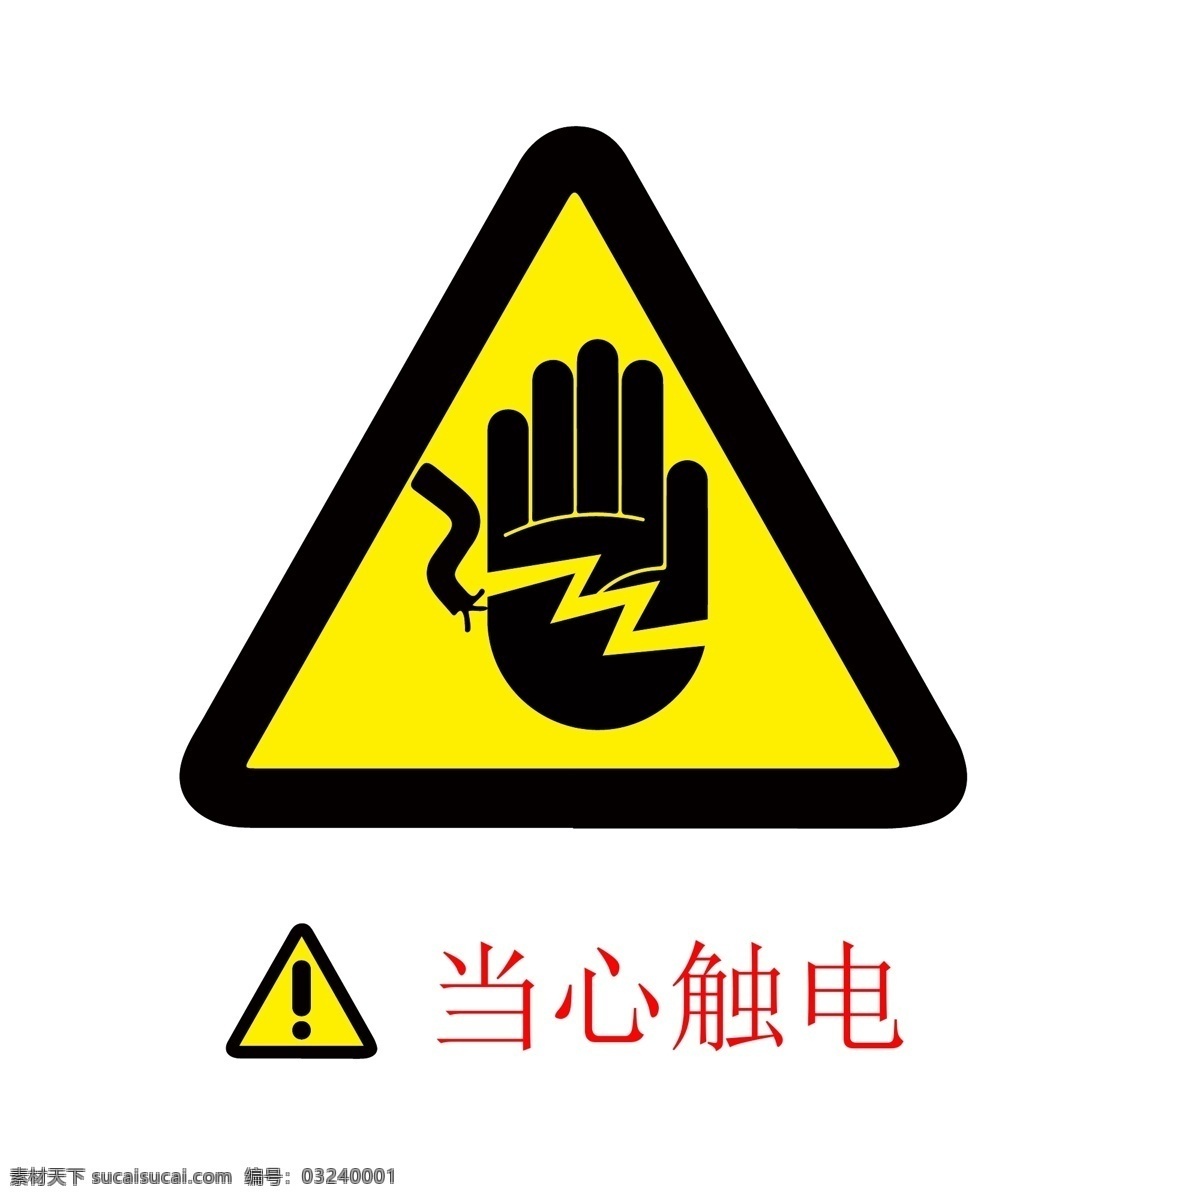 当心触电 当心 触电 标志 标语 安全 安全标志 当心标志 禁止标志 英文安全 英文标志